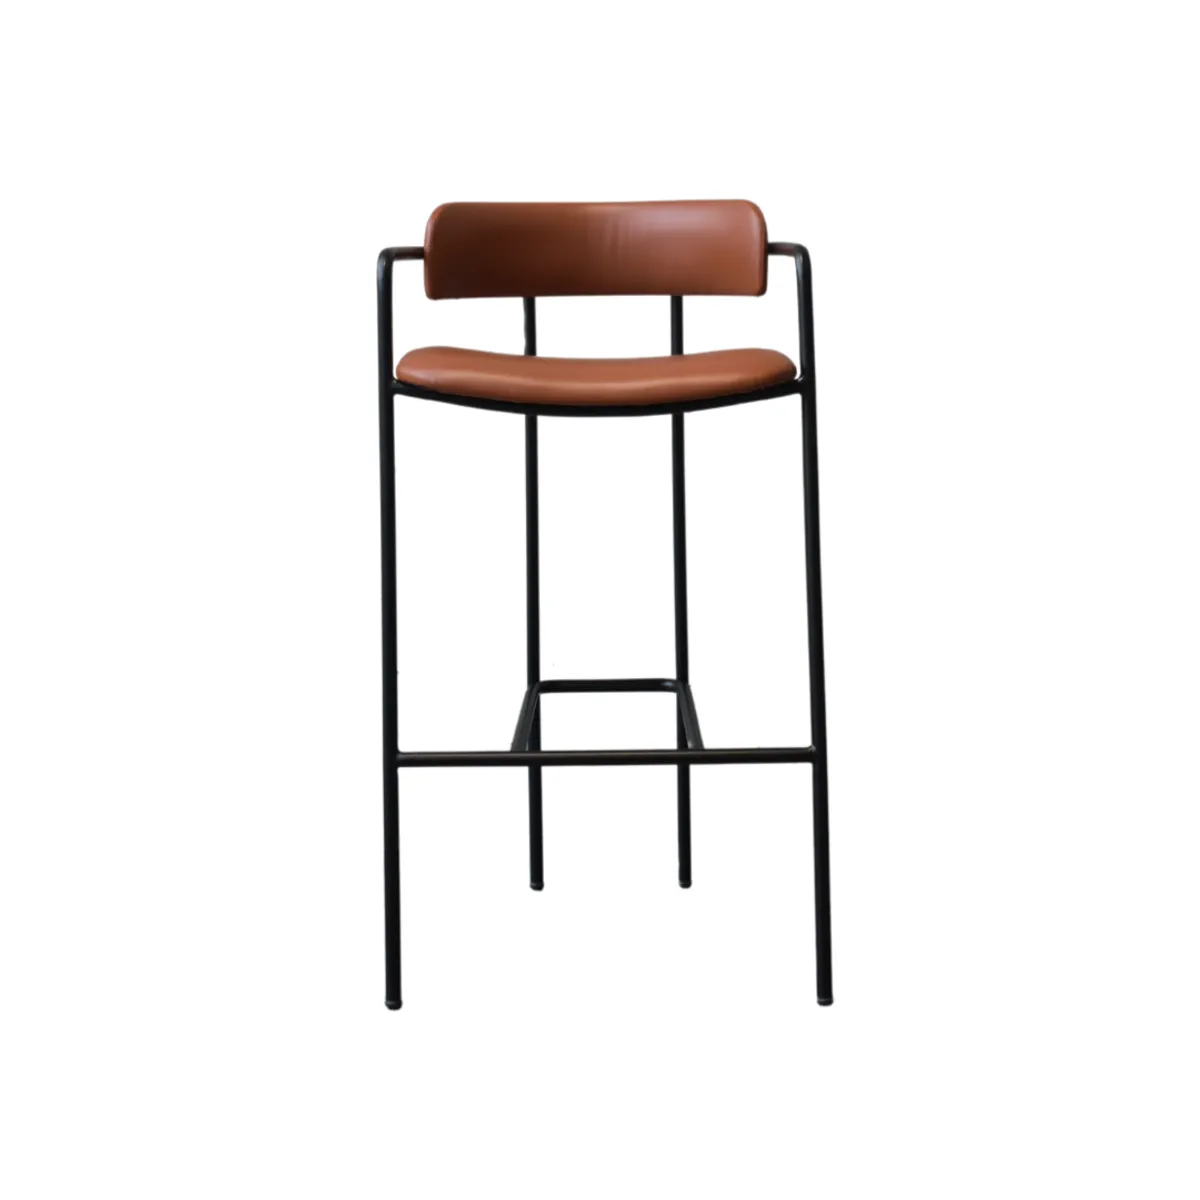 Claribel bar stool 1